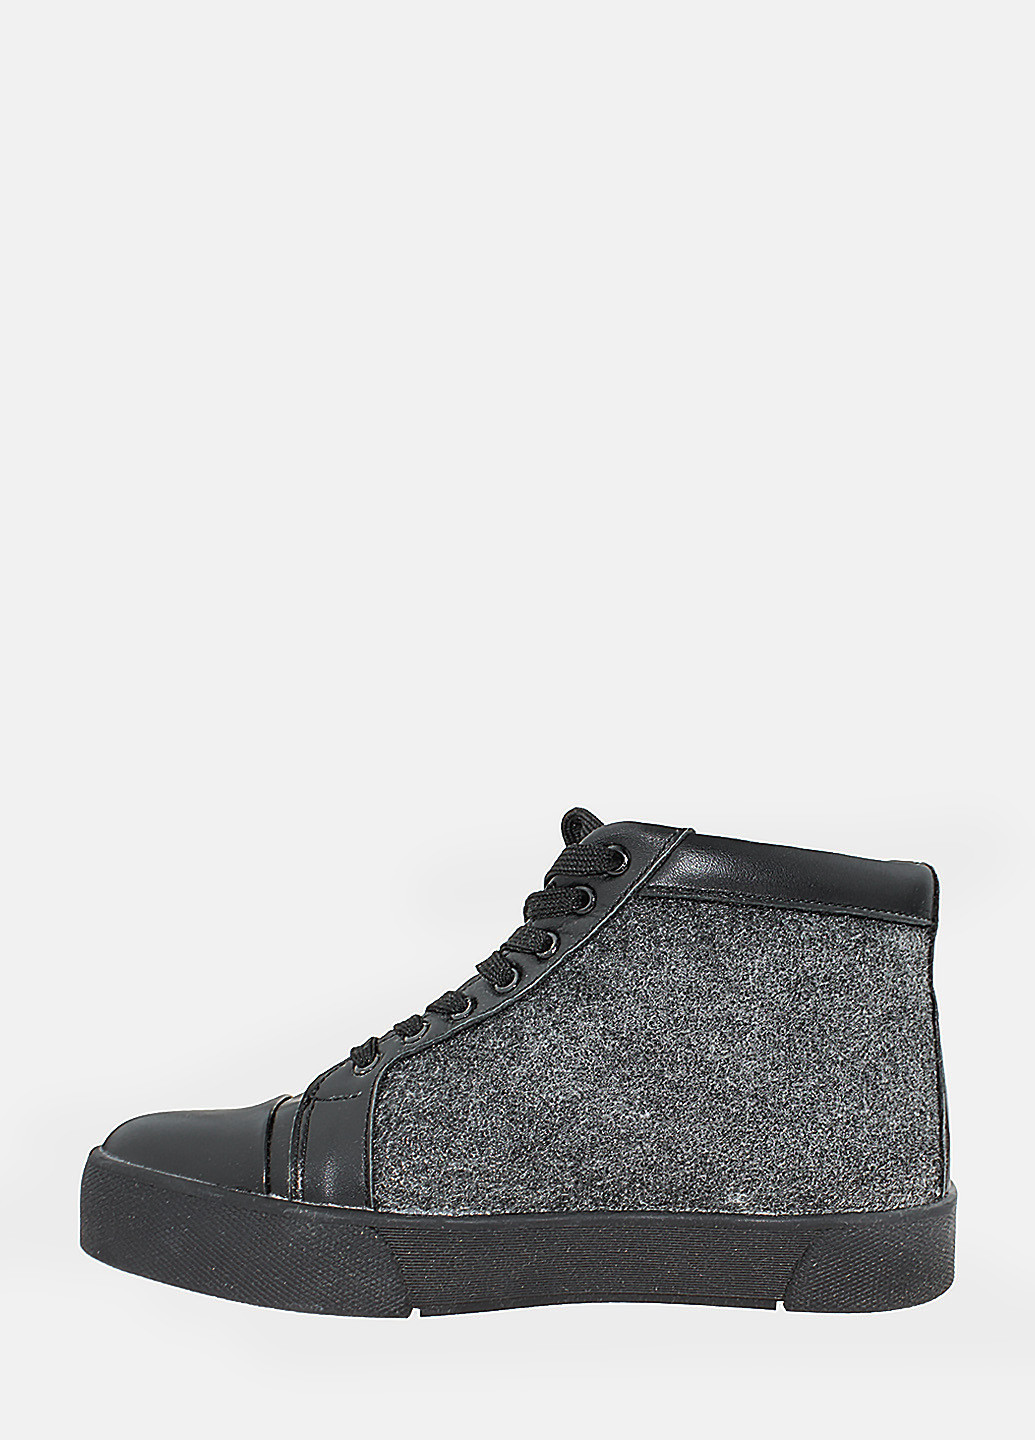 Осенние ботинки rdt132-1 черный-серый Daragani